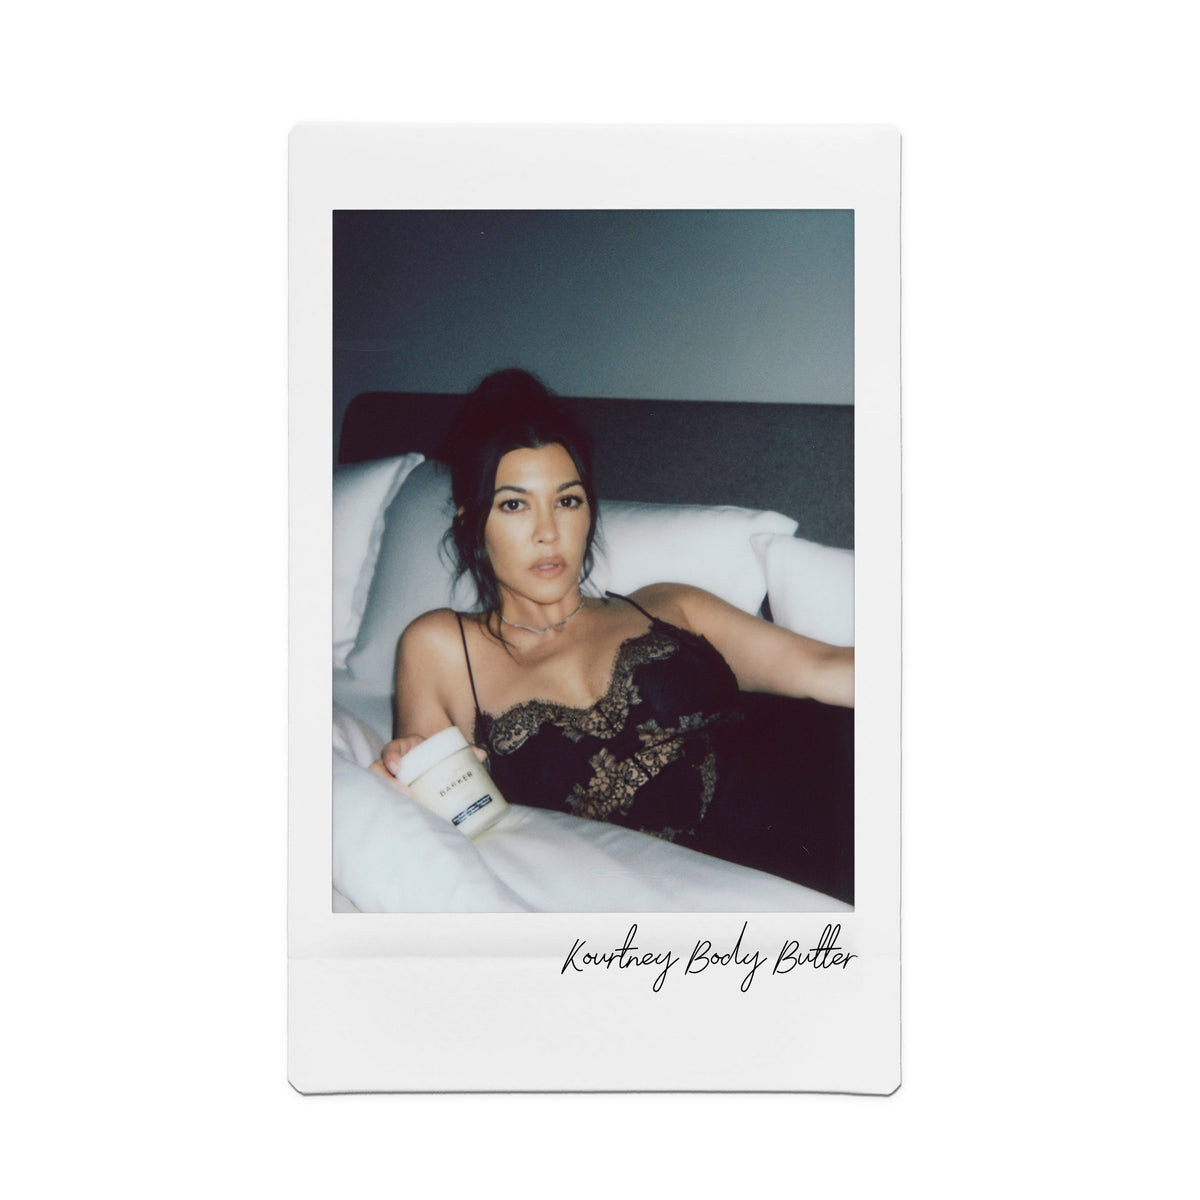 Body Butter, by Kourtney Kardashian x Travis Barker Wellness